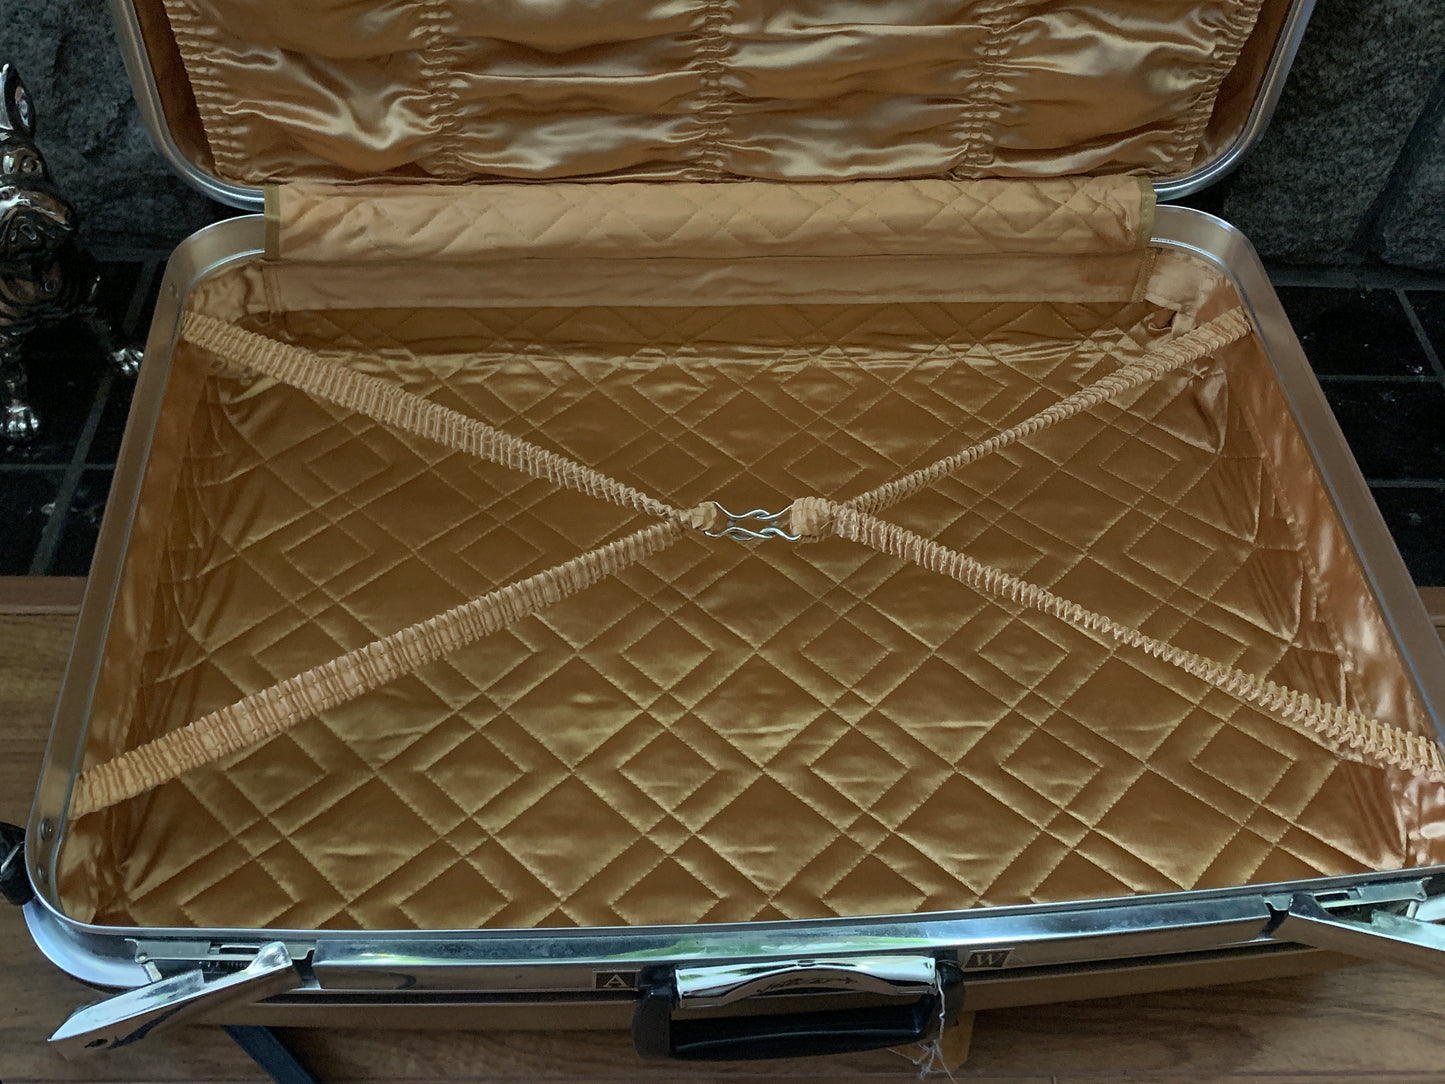 Extra Large Hard Shell Suitcase on Wheels Vintage Jetliner Suitcase